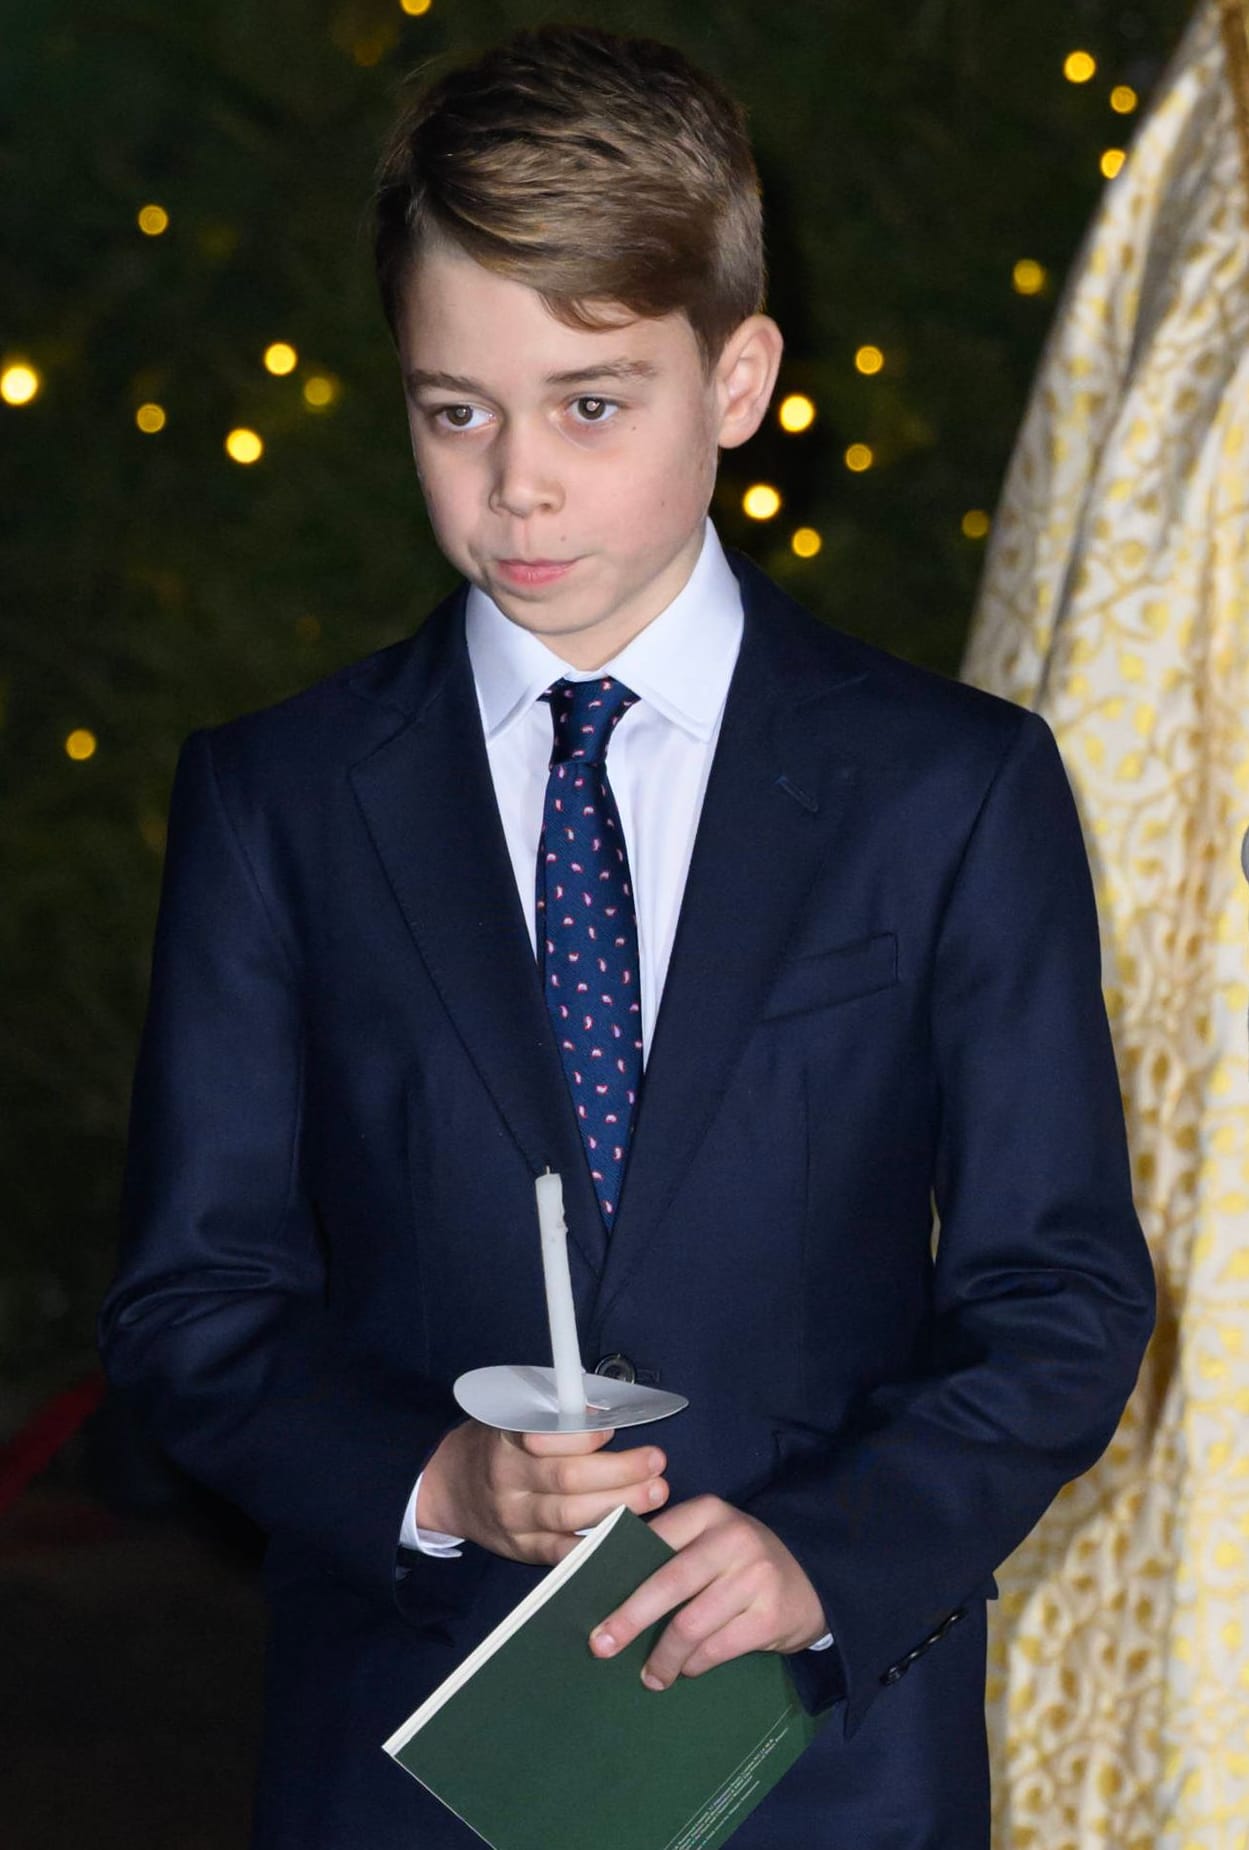 Vereinigtes Königreich: Prinz George, geboren 2013